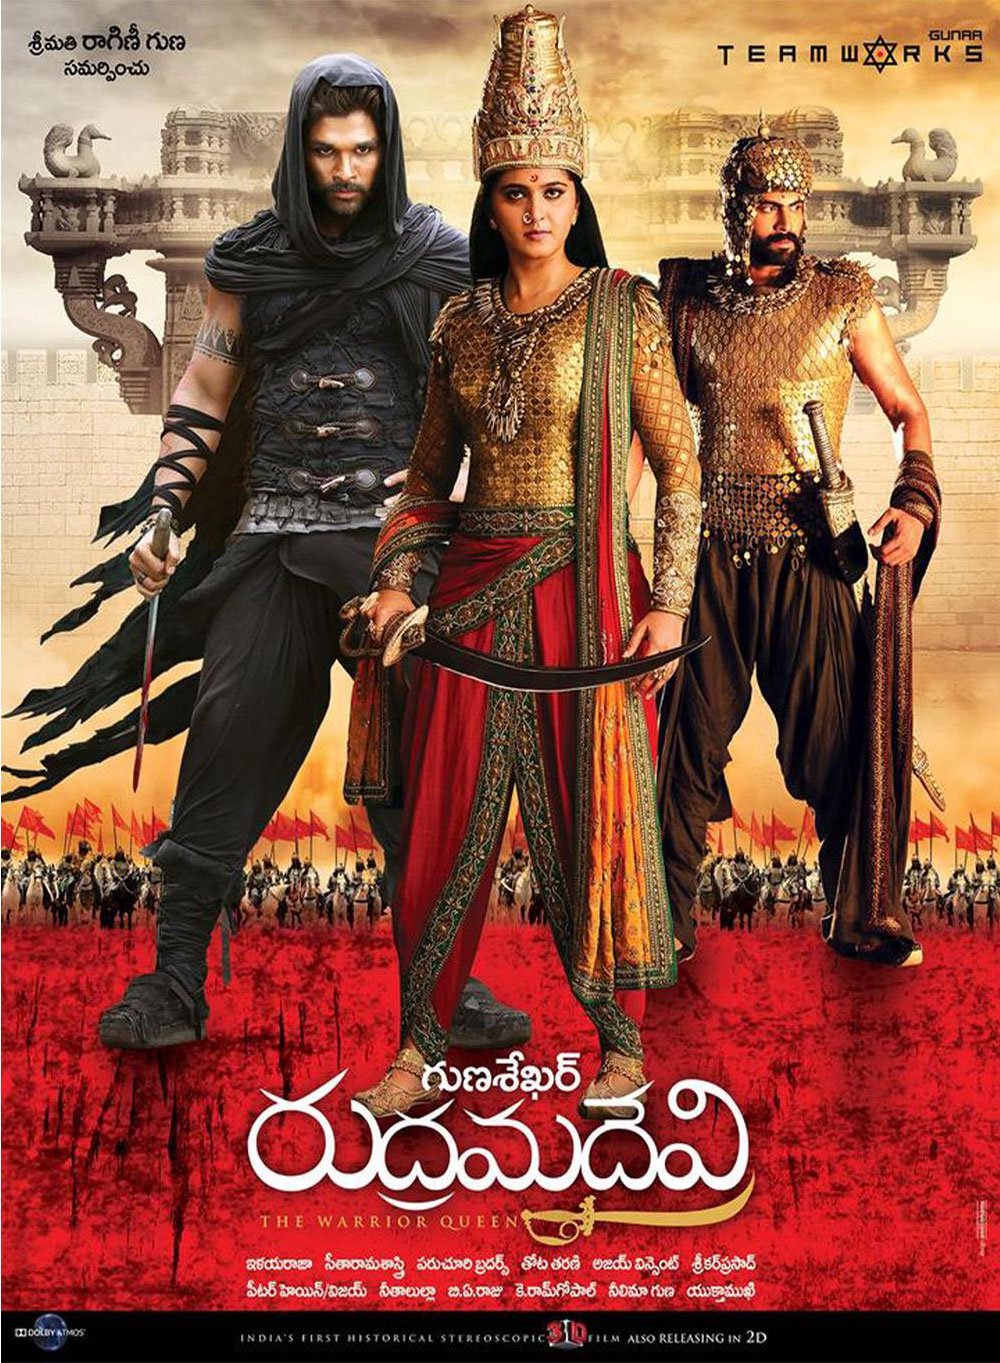 L'affiche originale du film Rudhramadevi en Telugu